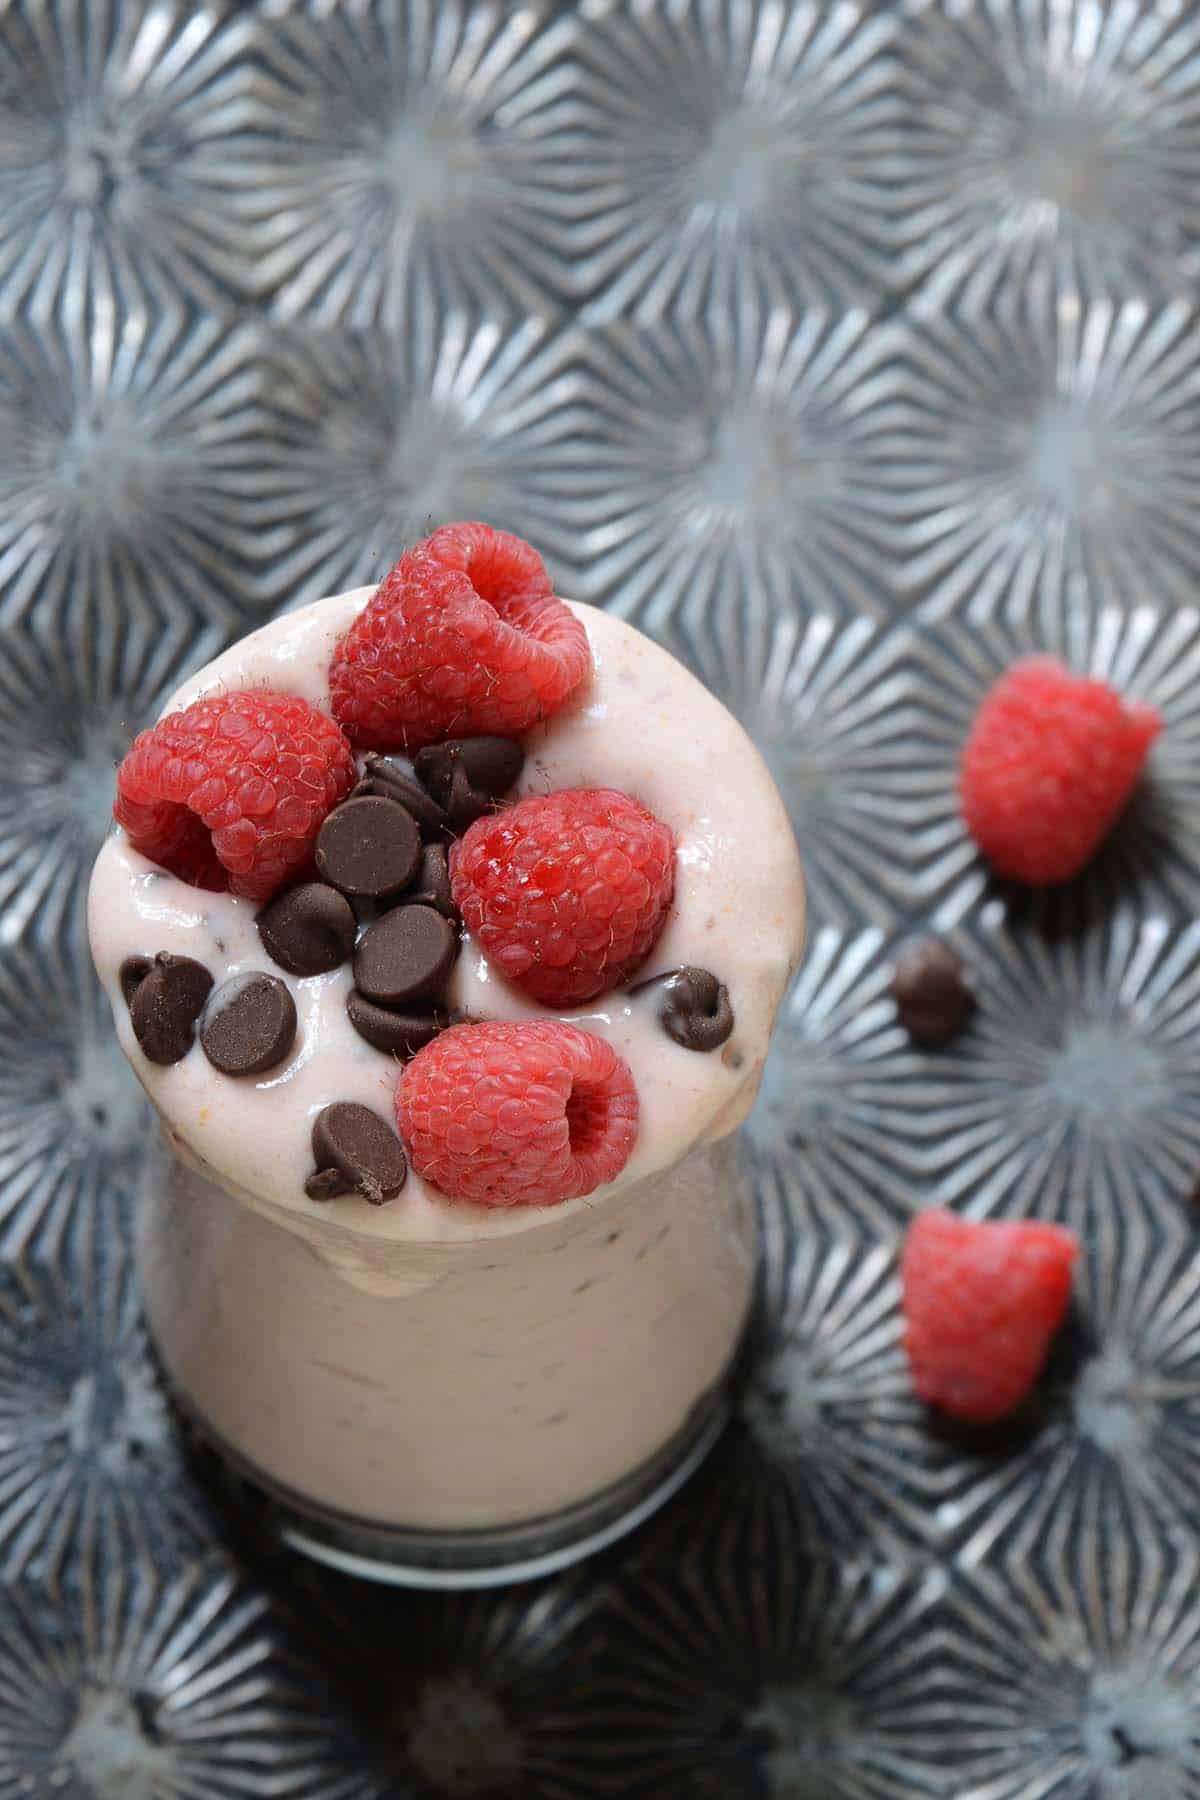 cheesecake milkshake recipe with raspberries and chocolate